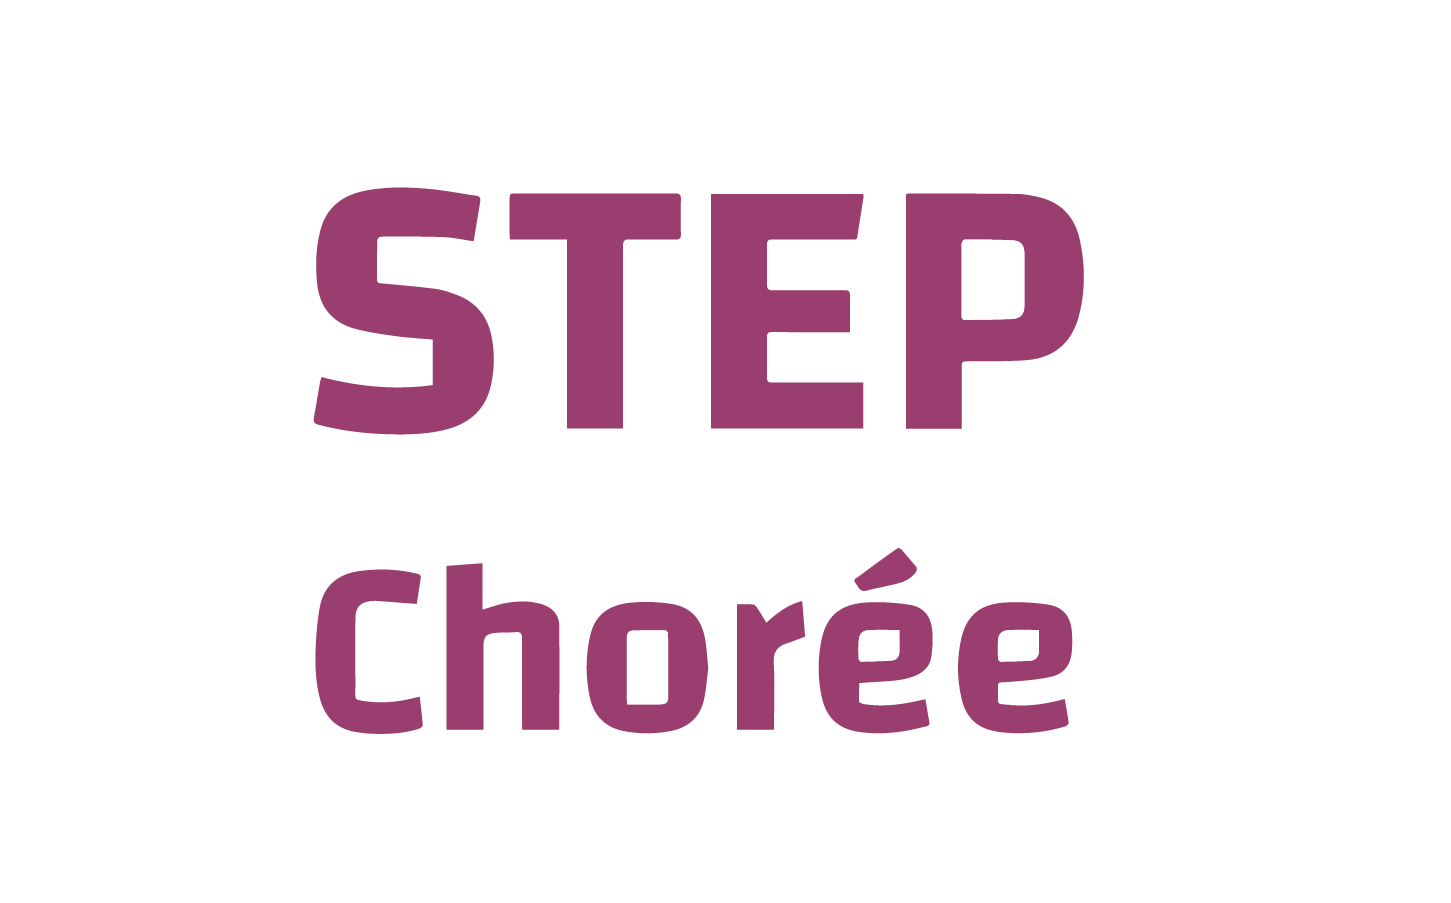 Au sein de la salle de sport Espace Forme à Aurillac, le STEP Chorée avec Alexandra Maure propose d'enchaîner des mouvements d’aérobics pour créer des chorégraphies fitness autour d’un step.